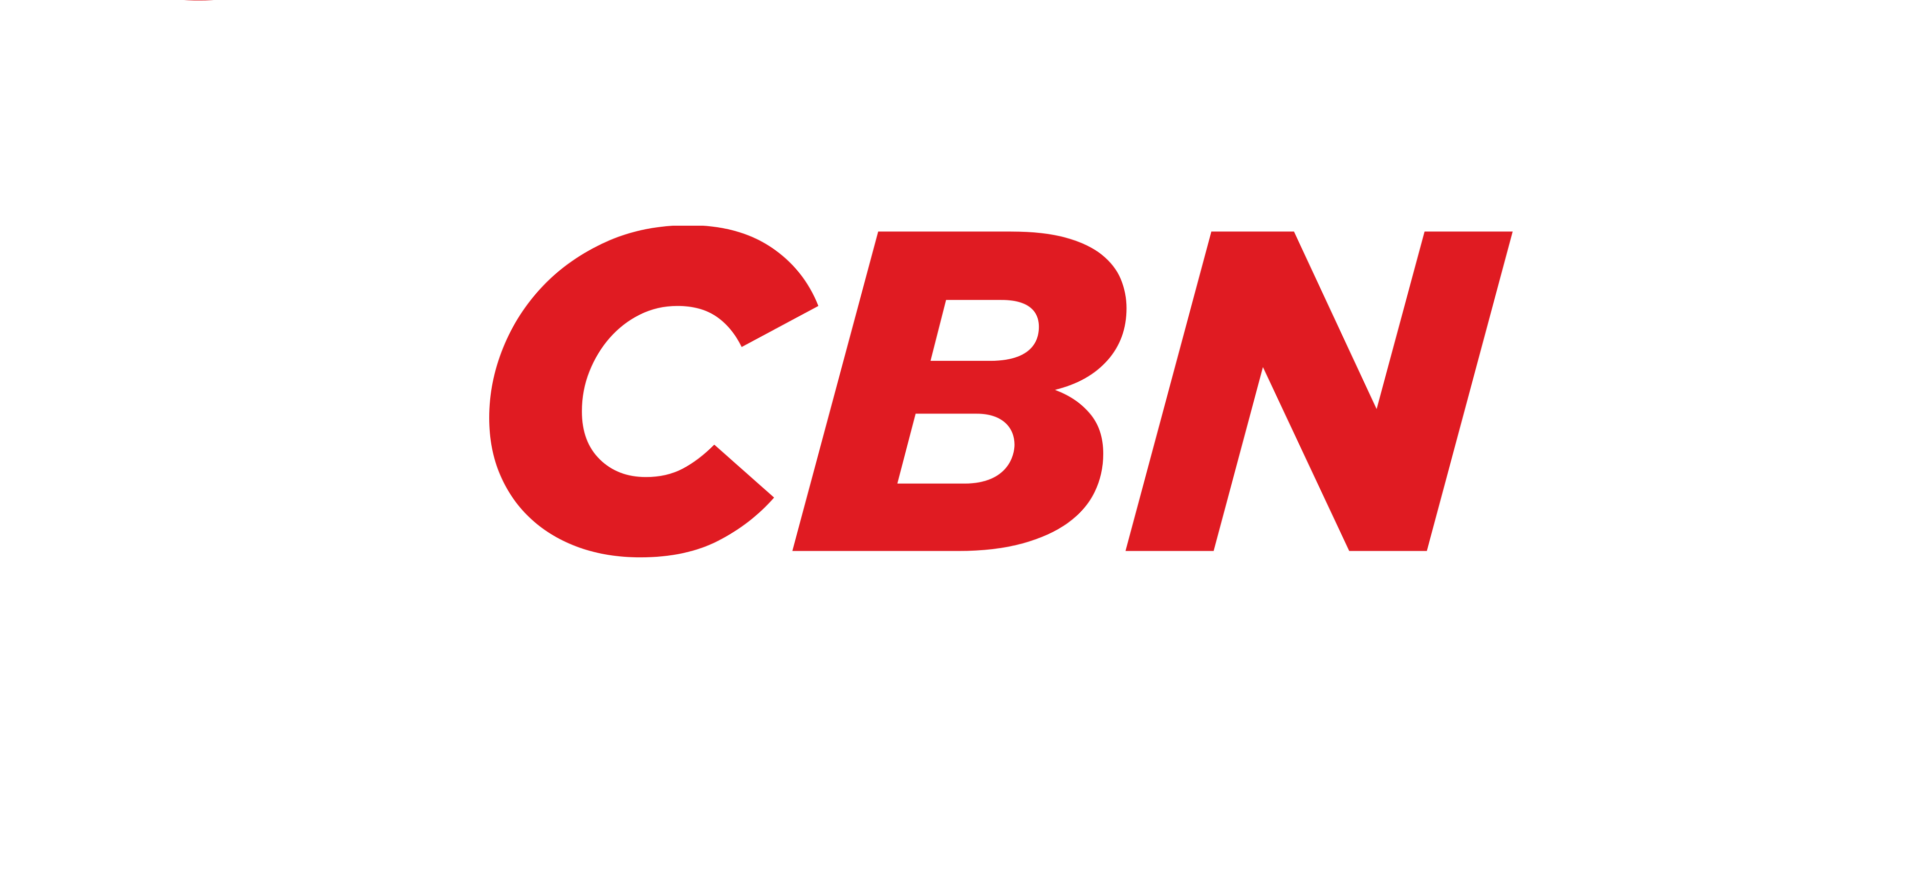 CBN comemora 25 anos com nova diretoria - Meio & Mensagem